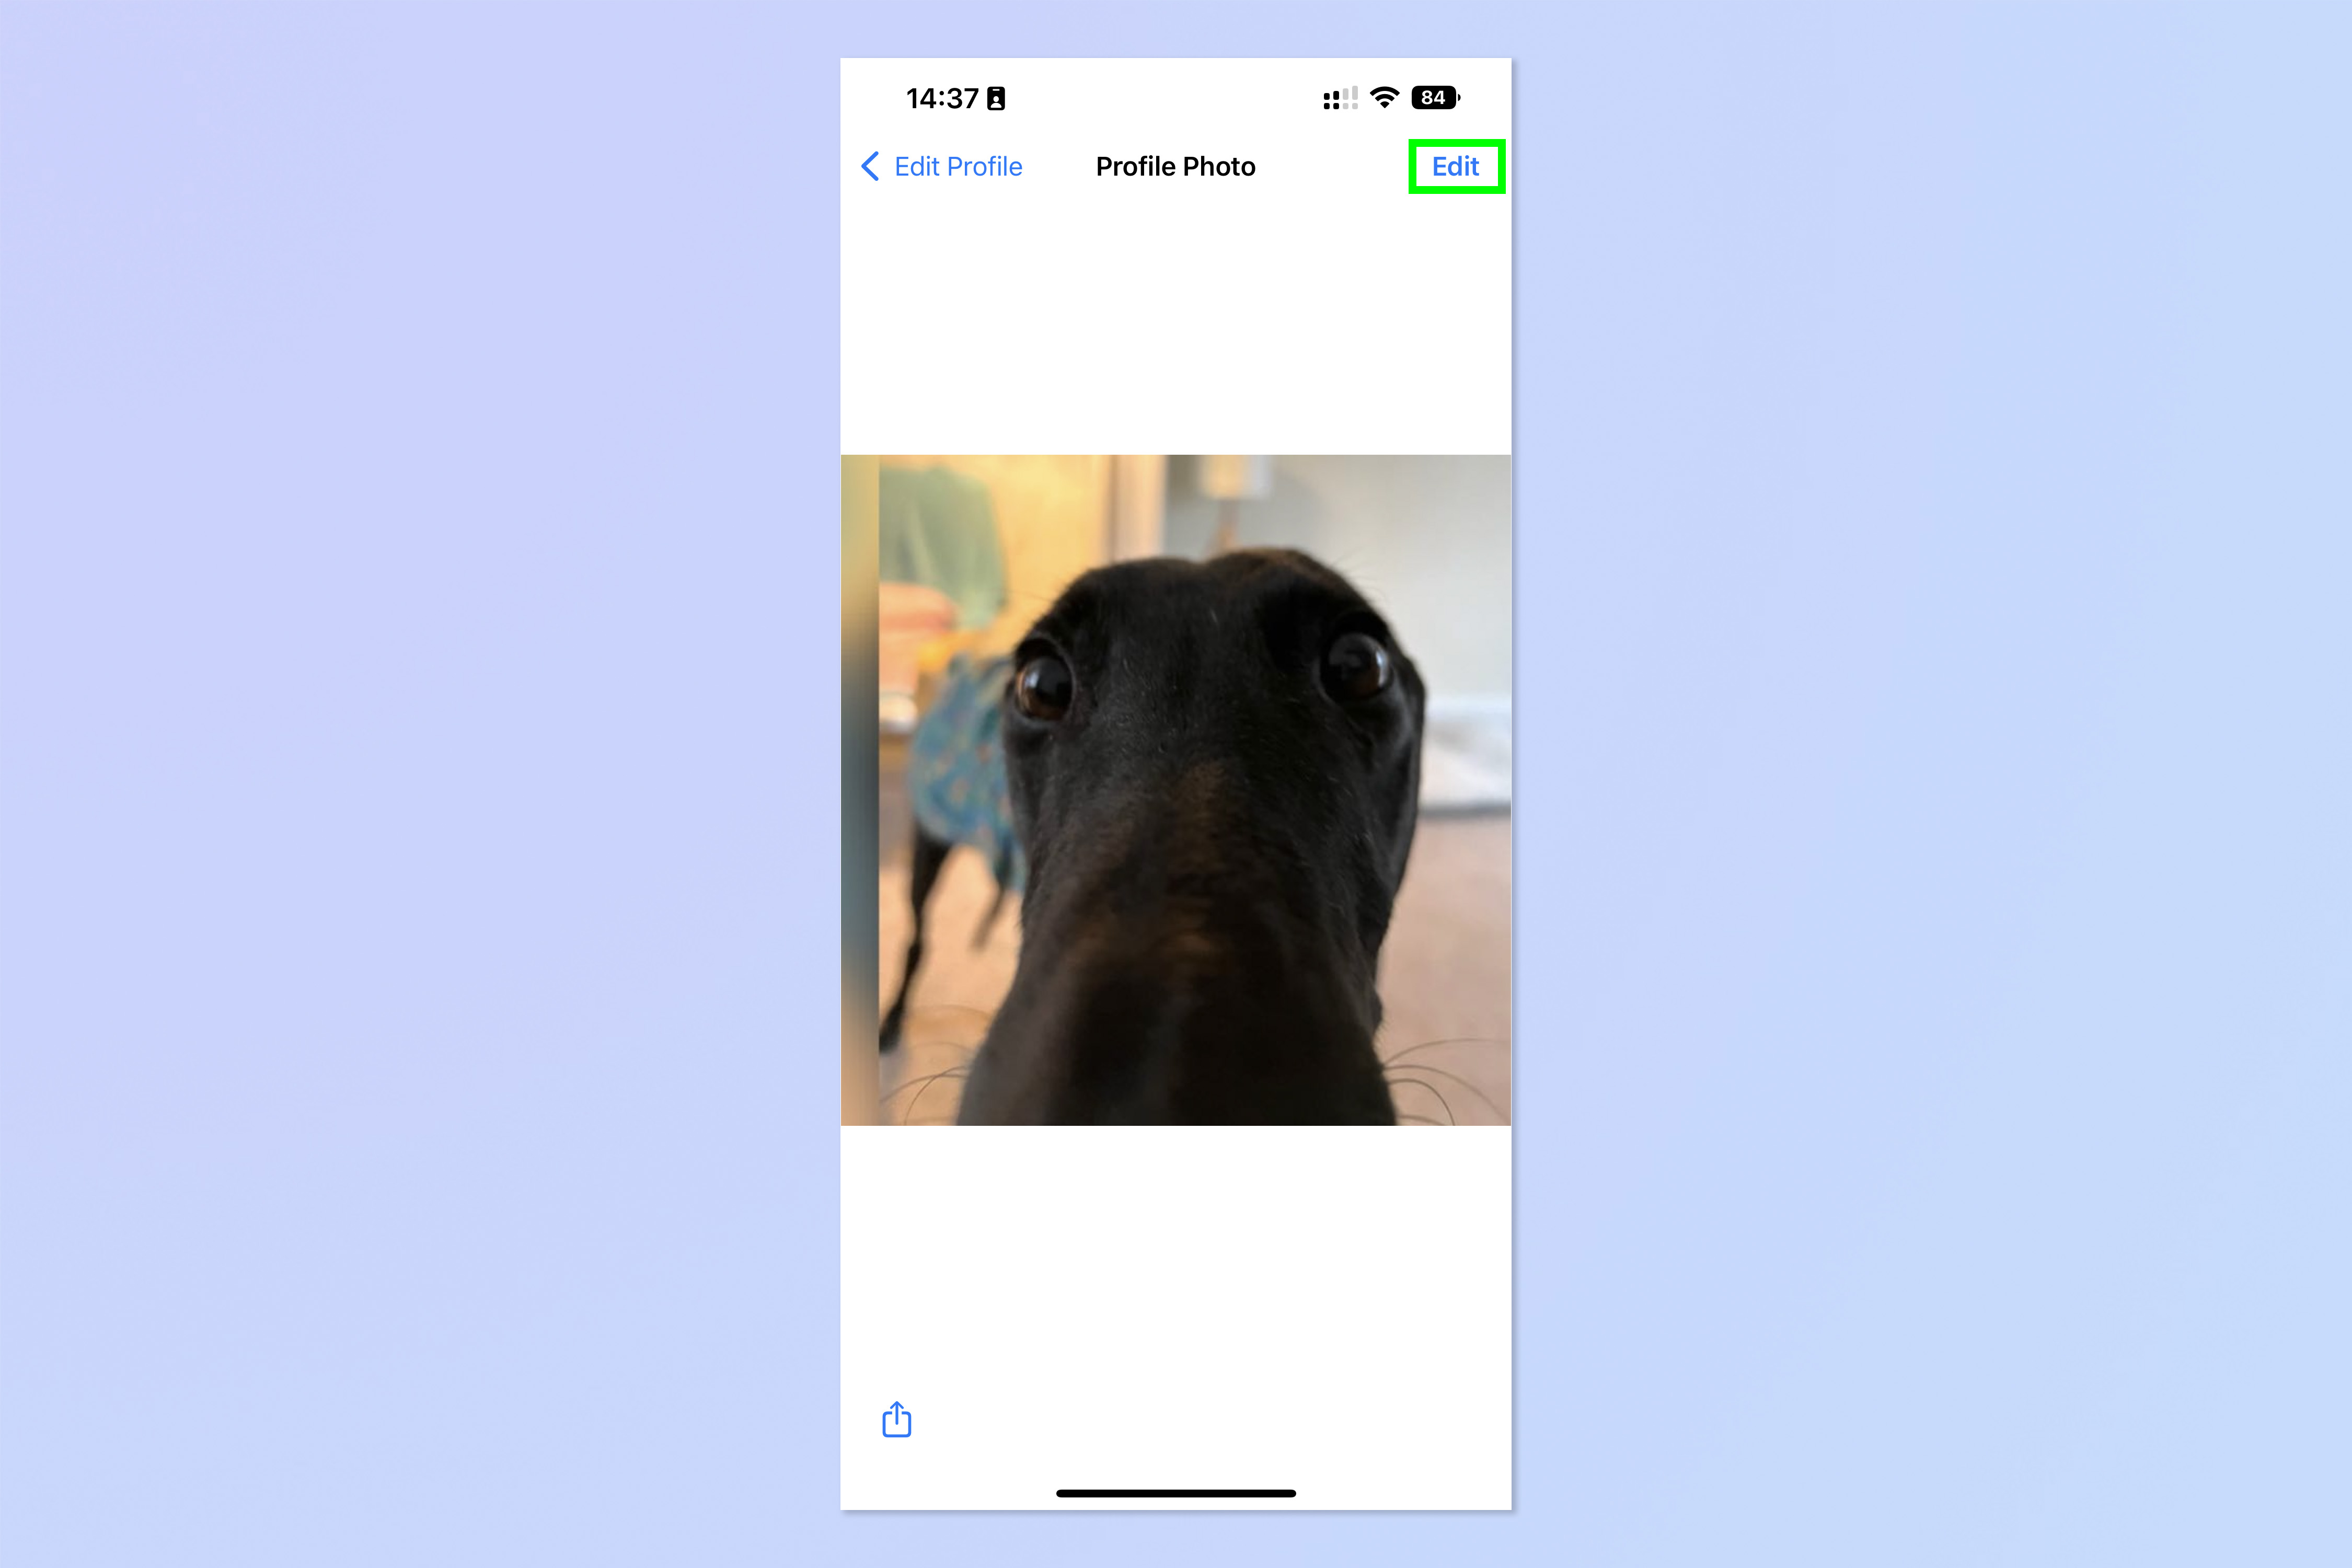 Скриншот, показывающий шаги, необходимые для создания аватара WhatsApp, установки его в качестве изображения профиля и отправки в качестве стикера.